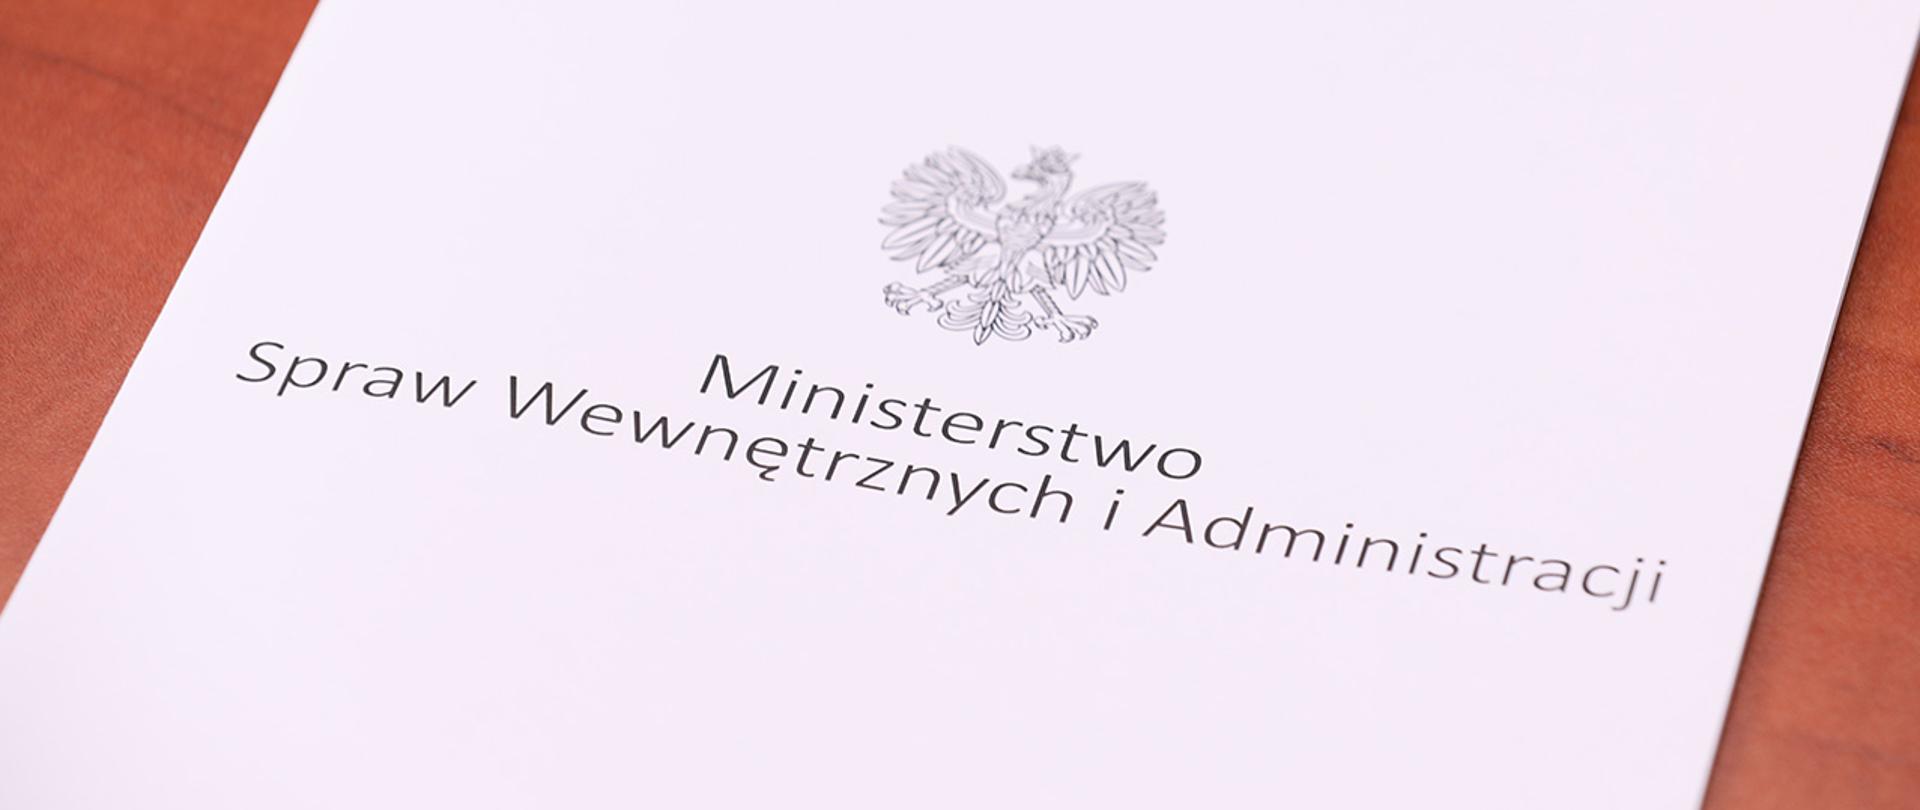 Na zdjęciu widać leżącą teczkę z napisem "Ministerstwo Spraw Wewnętrznych i Administracji" i orłem z godła narodowego.